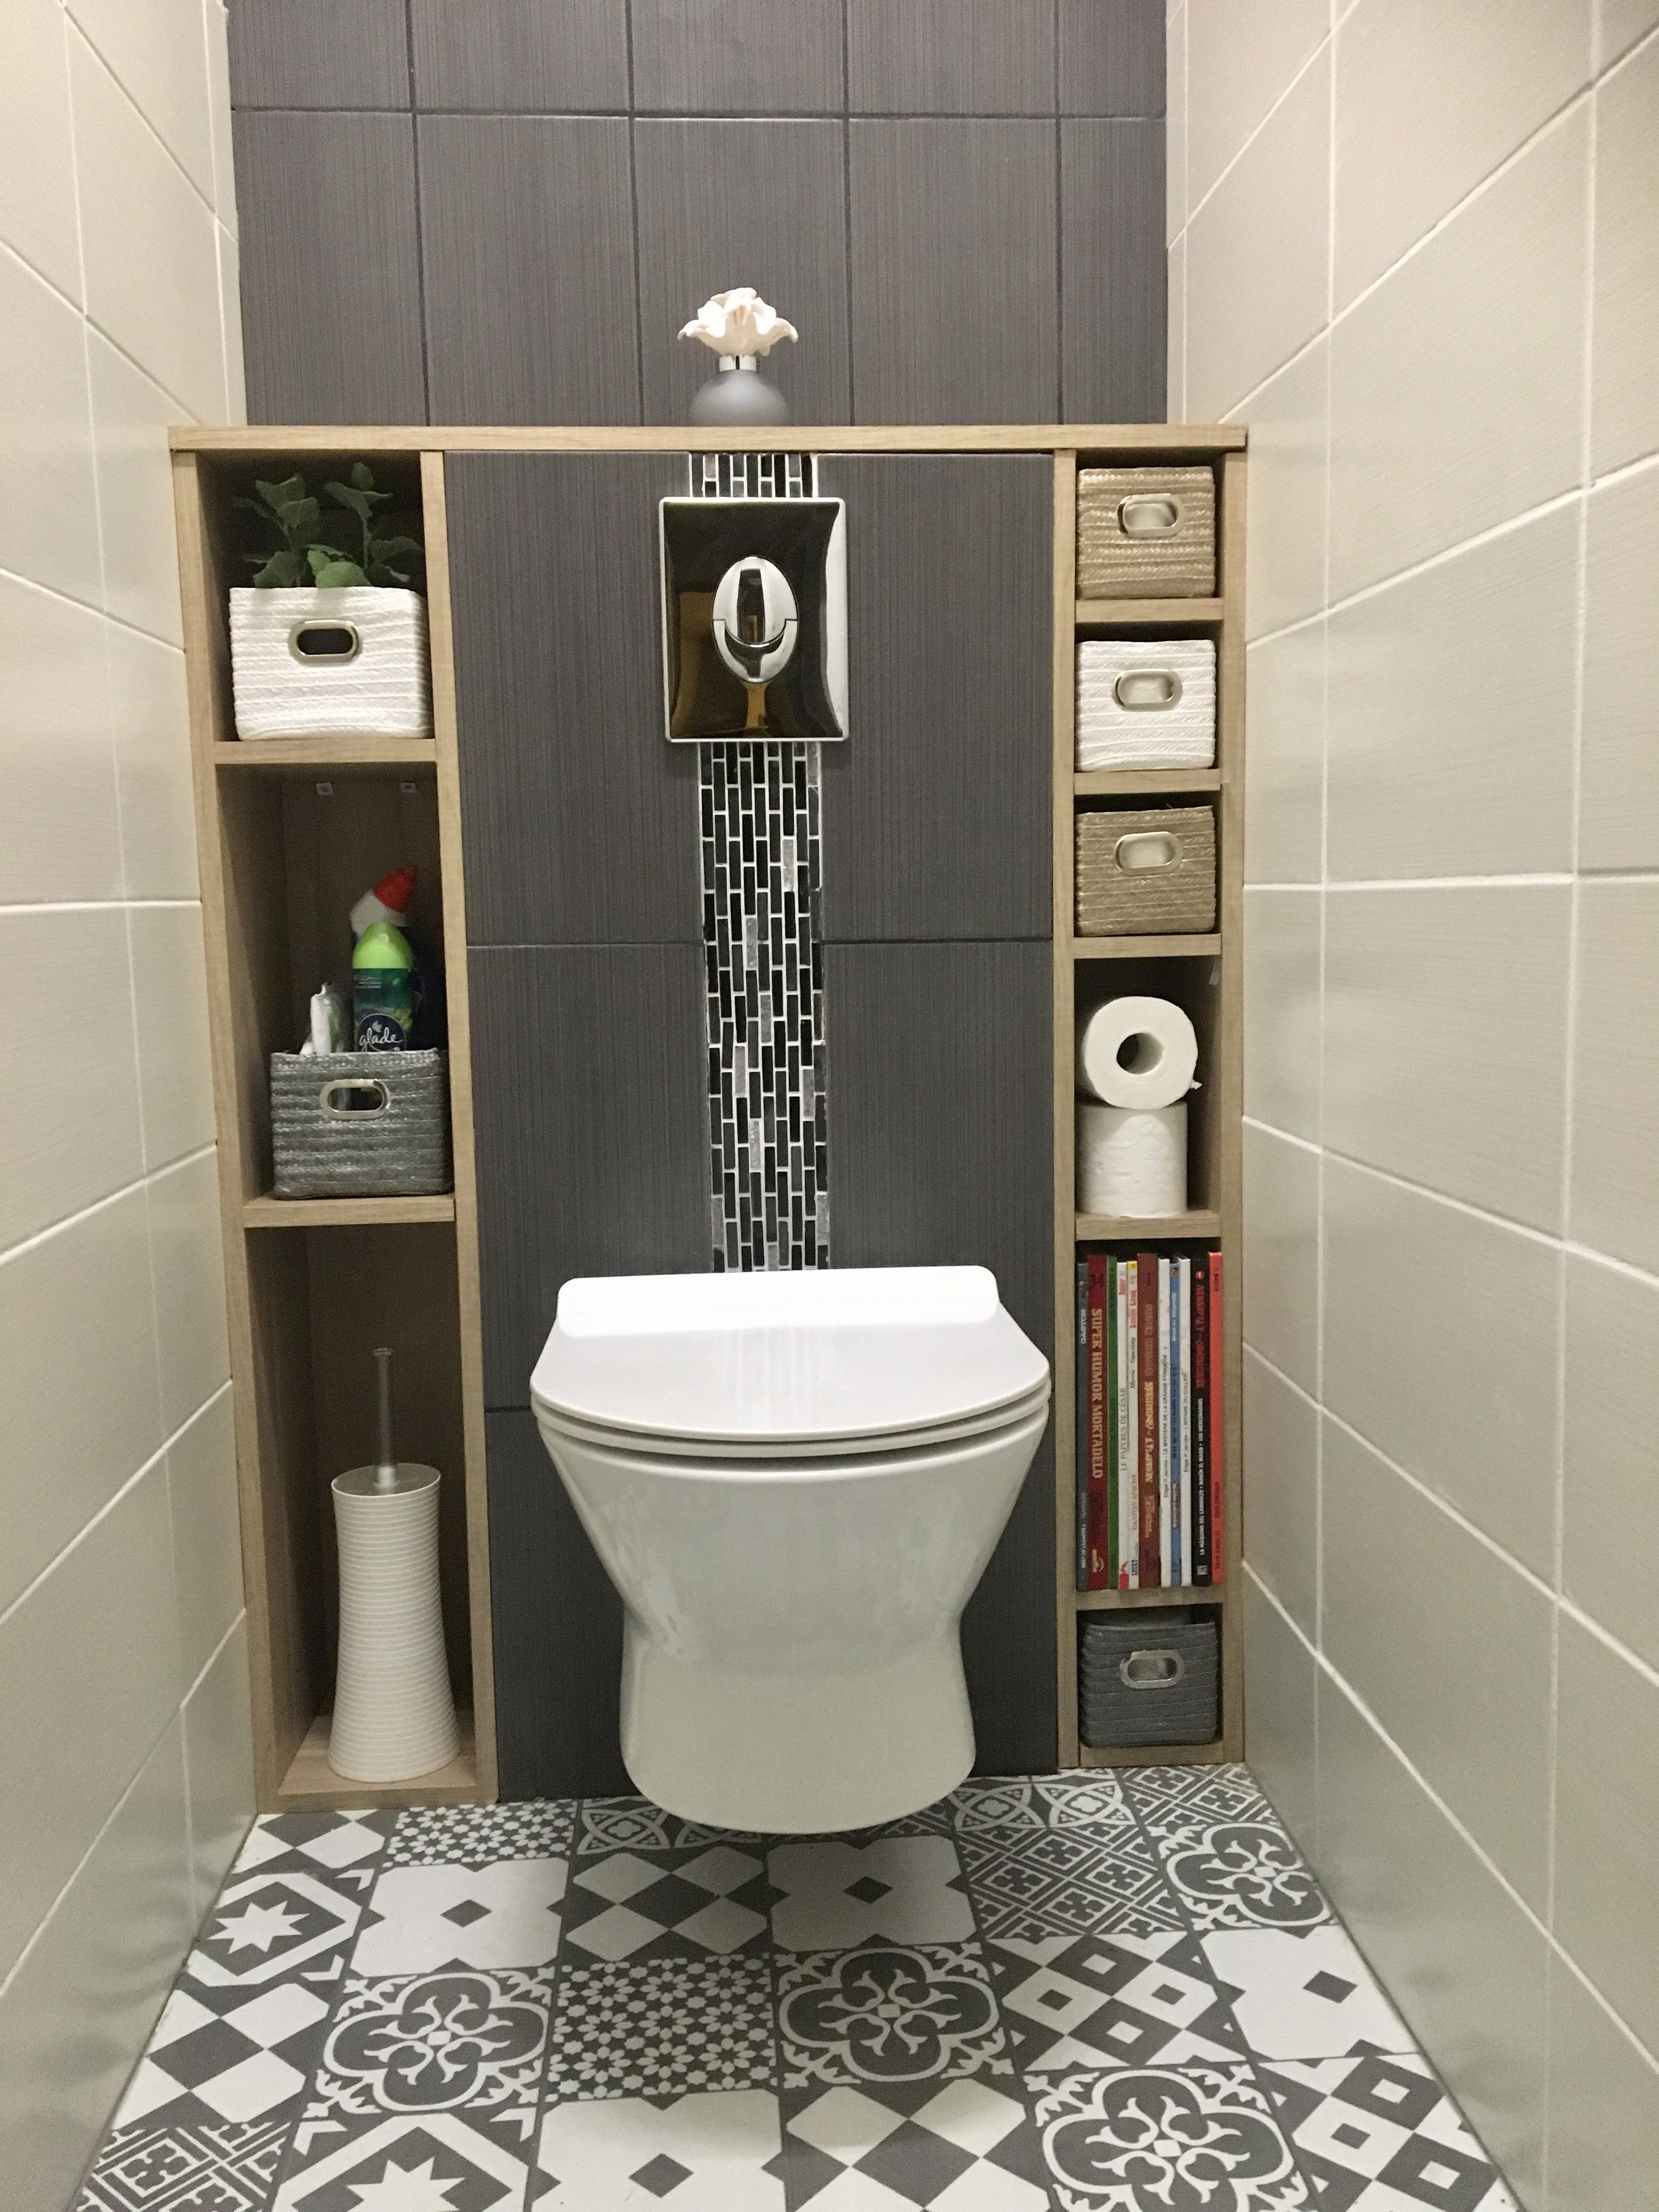 #Wc#Suspendu#Carreaux#Ciment#Blanc#White#Gris#Grey#Tiles# encequiconcerne Amenagement Toilette